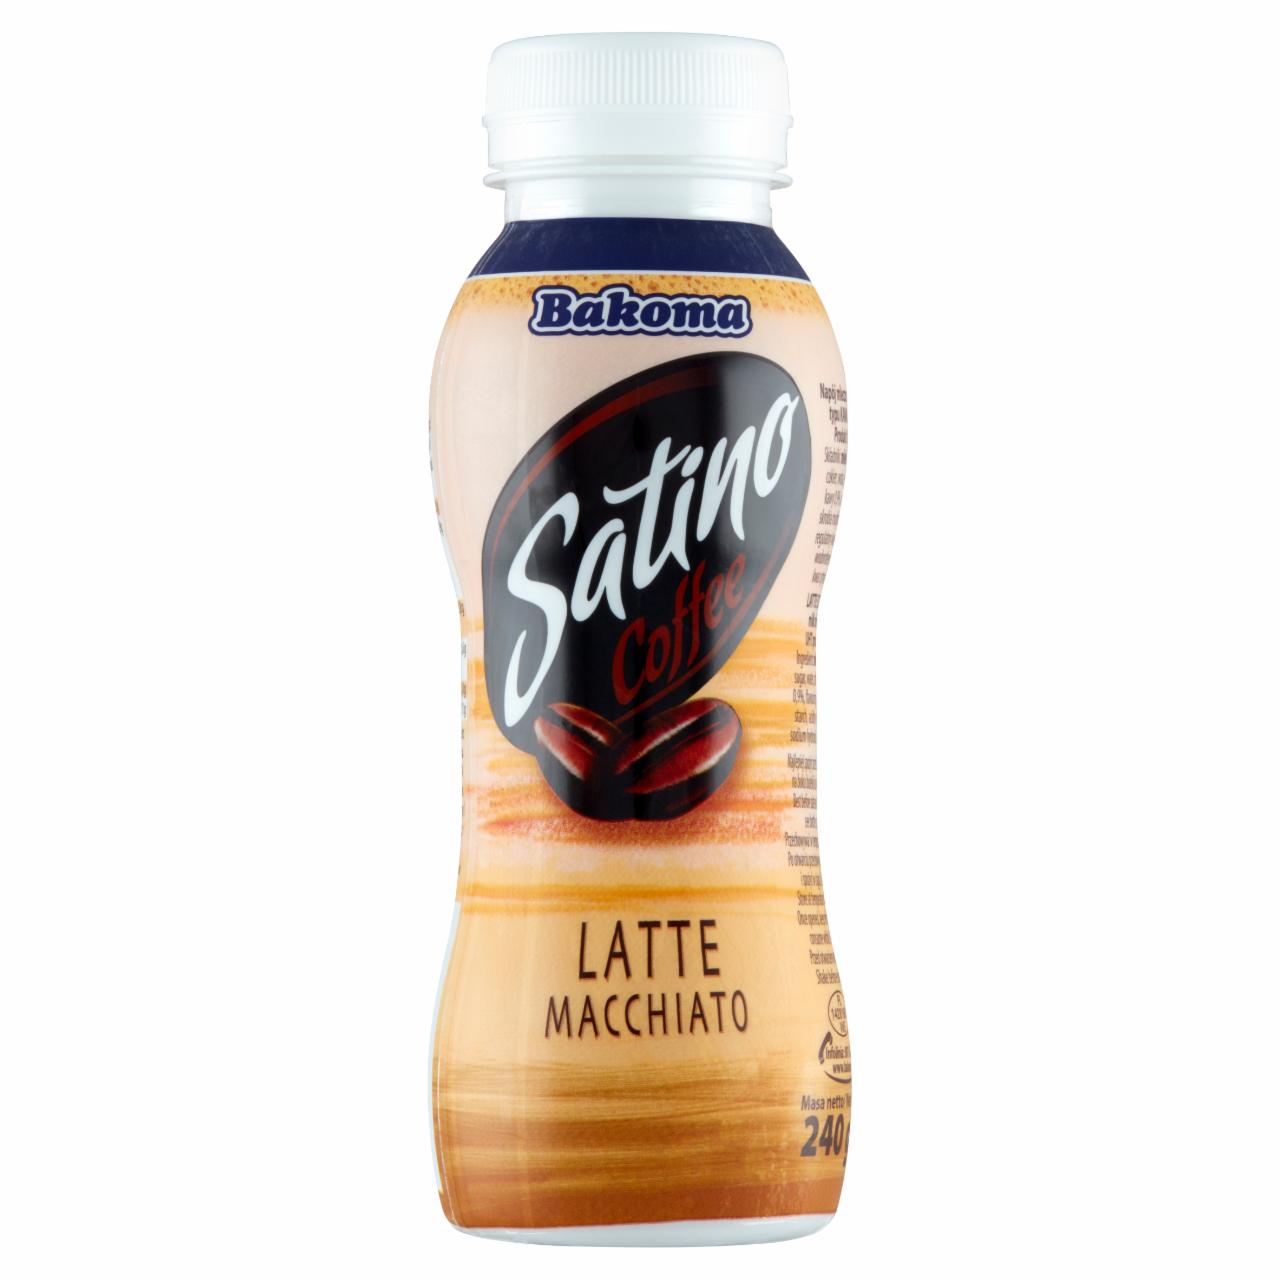 Zdjęcia - Bakoma Satino Latte Macchiato Napój mleczny kawowy 240 g